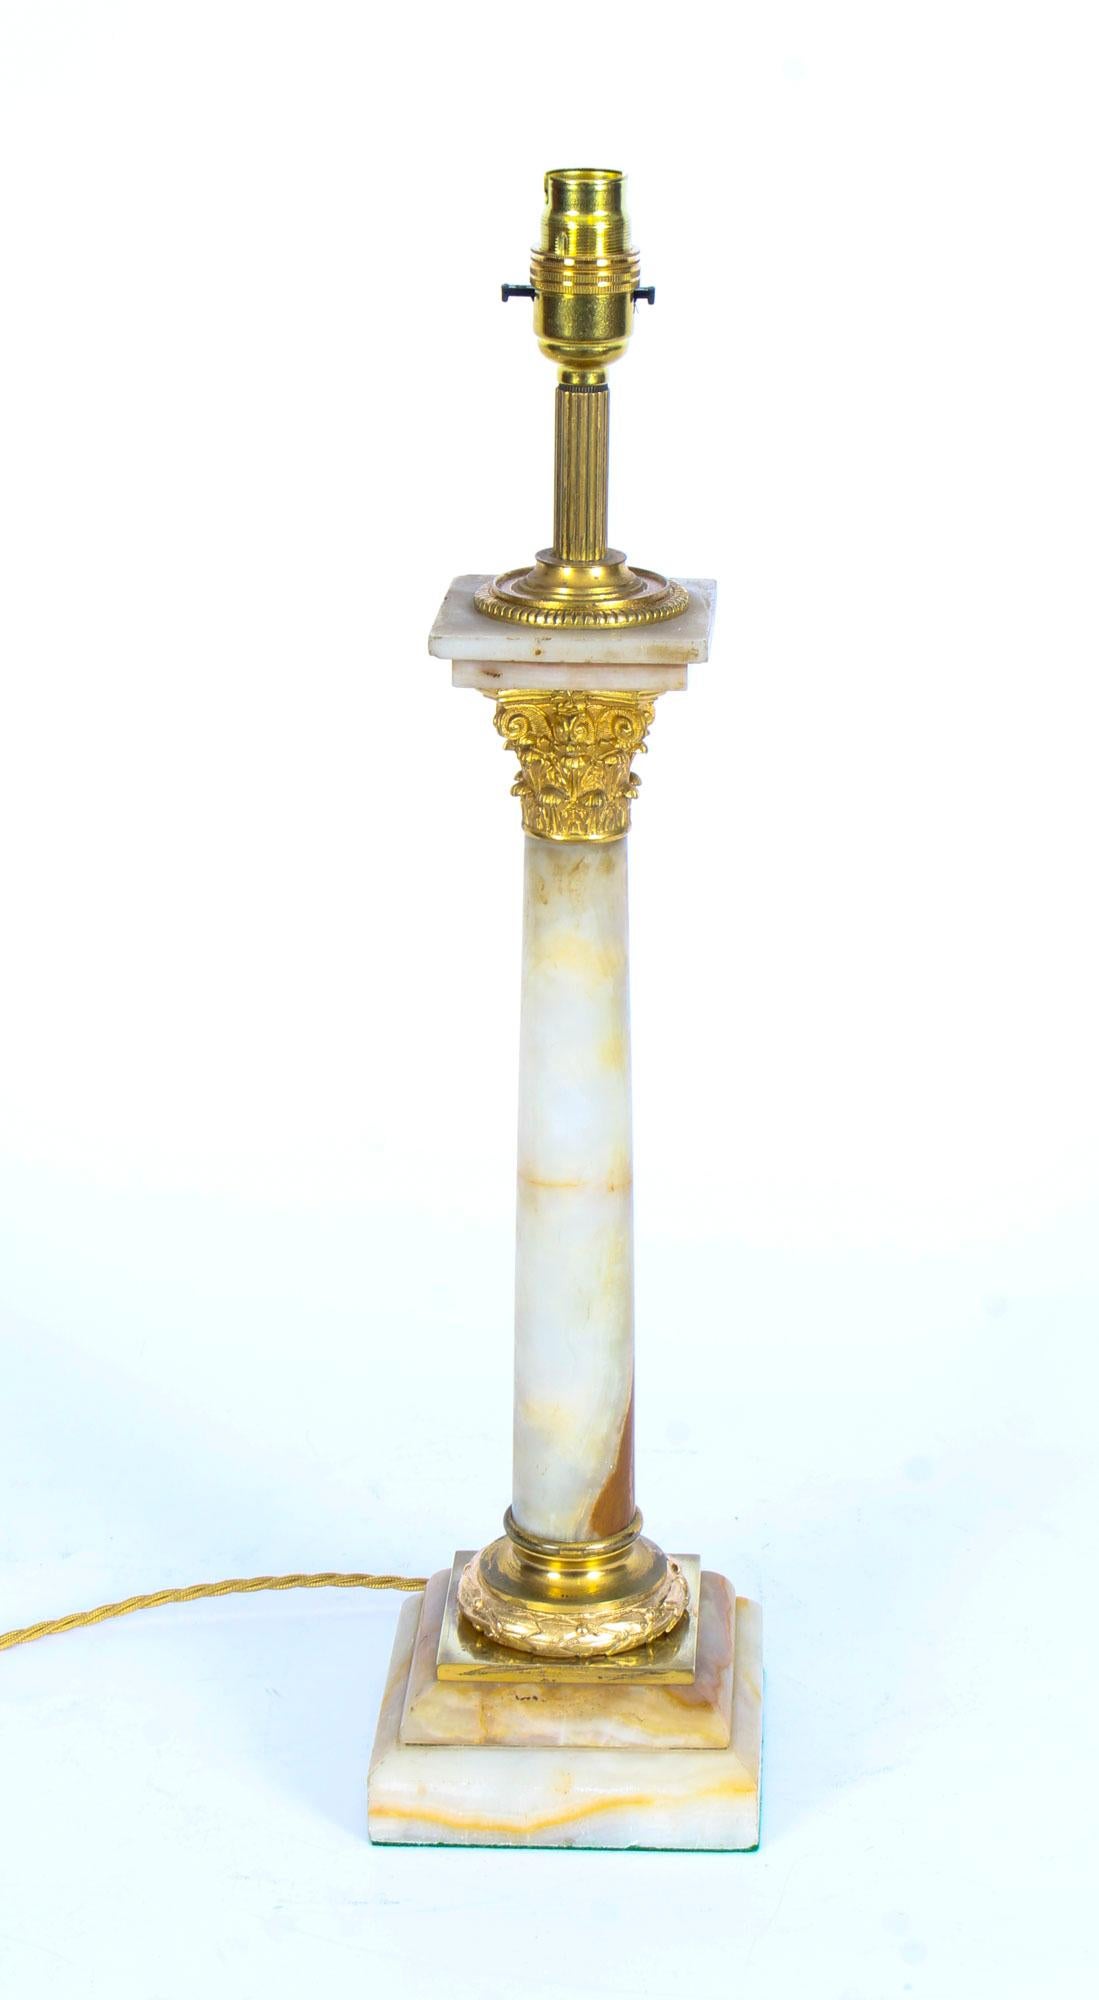 Dies ist eine herrliche antike spätviktorianischen Ormolu montiert Onyx korinthischen Säule Tischlampe jetzt auf Strom umgewandelt, um 1880 in Datum.

Diese opulente antike Tischlampe zeigt ein fein gegossenes korinthisches Kapitell aus Ormolu, das